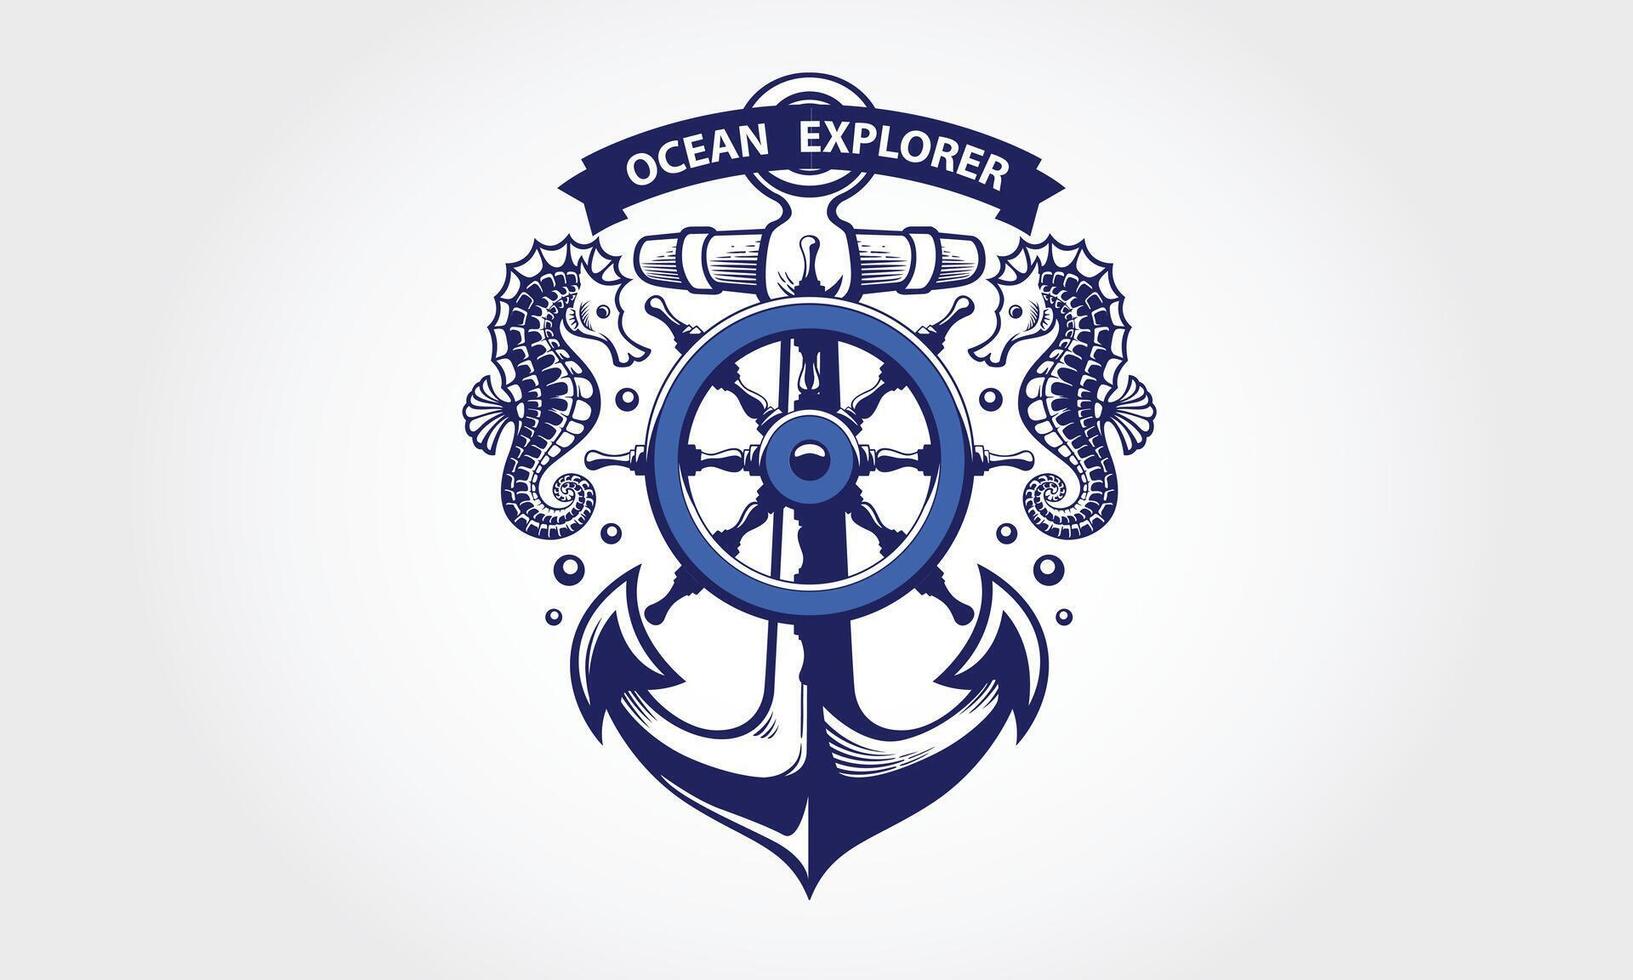 Oceano explorador vector logo modelo. esta logo con Embarcacion ancla, y caballo de mar un genial adecuado para buceo club, mar y Oceano exploración aventuras náutico icono.